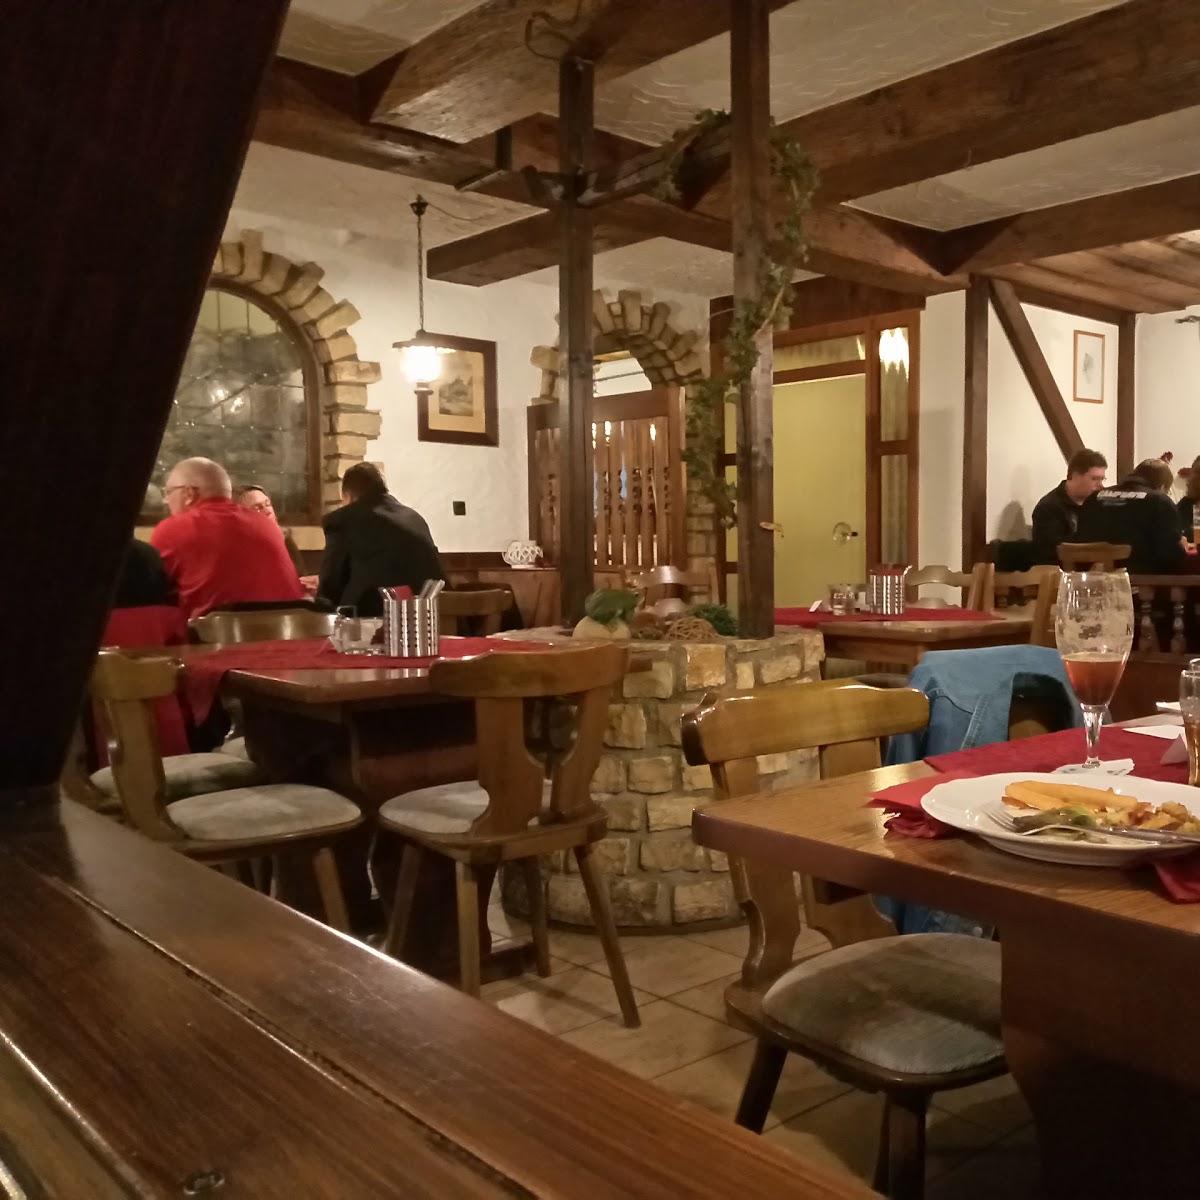 Restaurant "Weinhaus Zum Scharfenstein" in Kiedrich